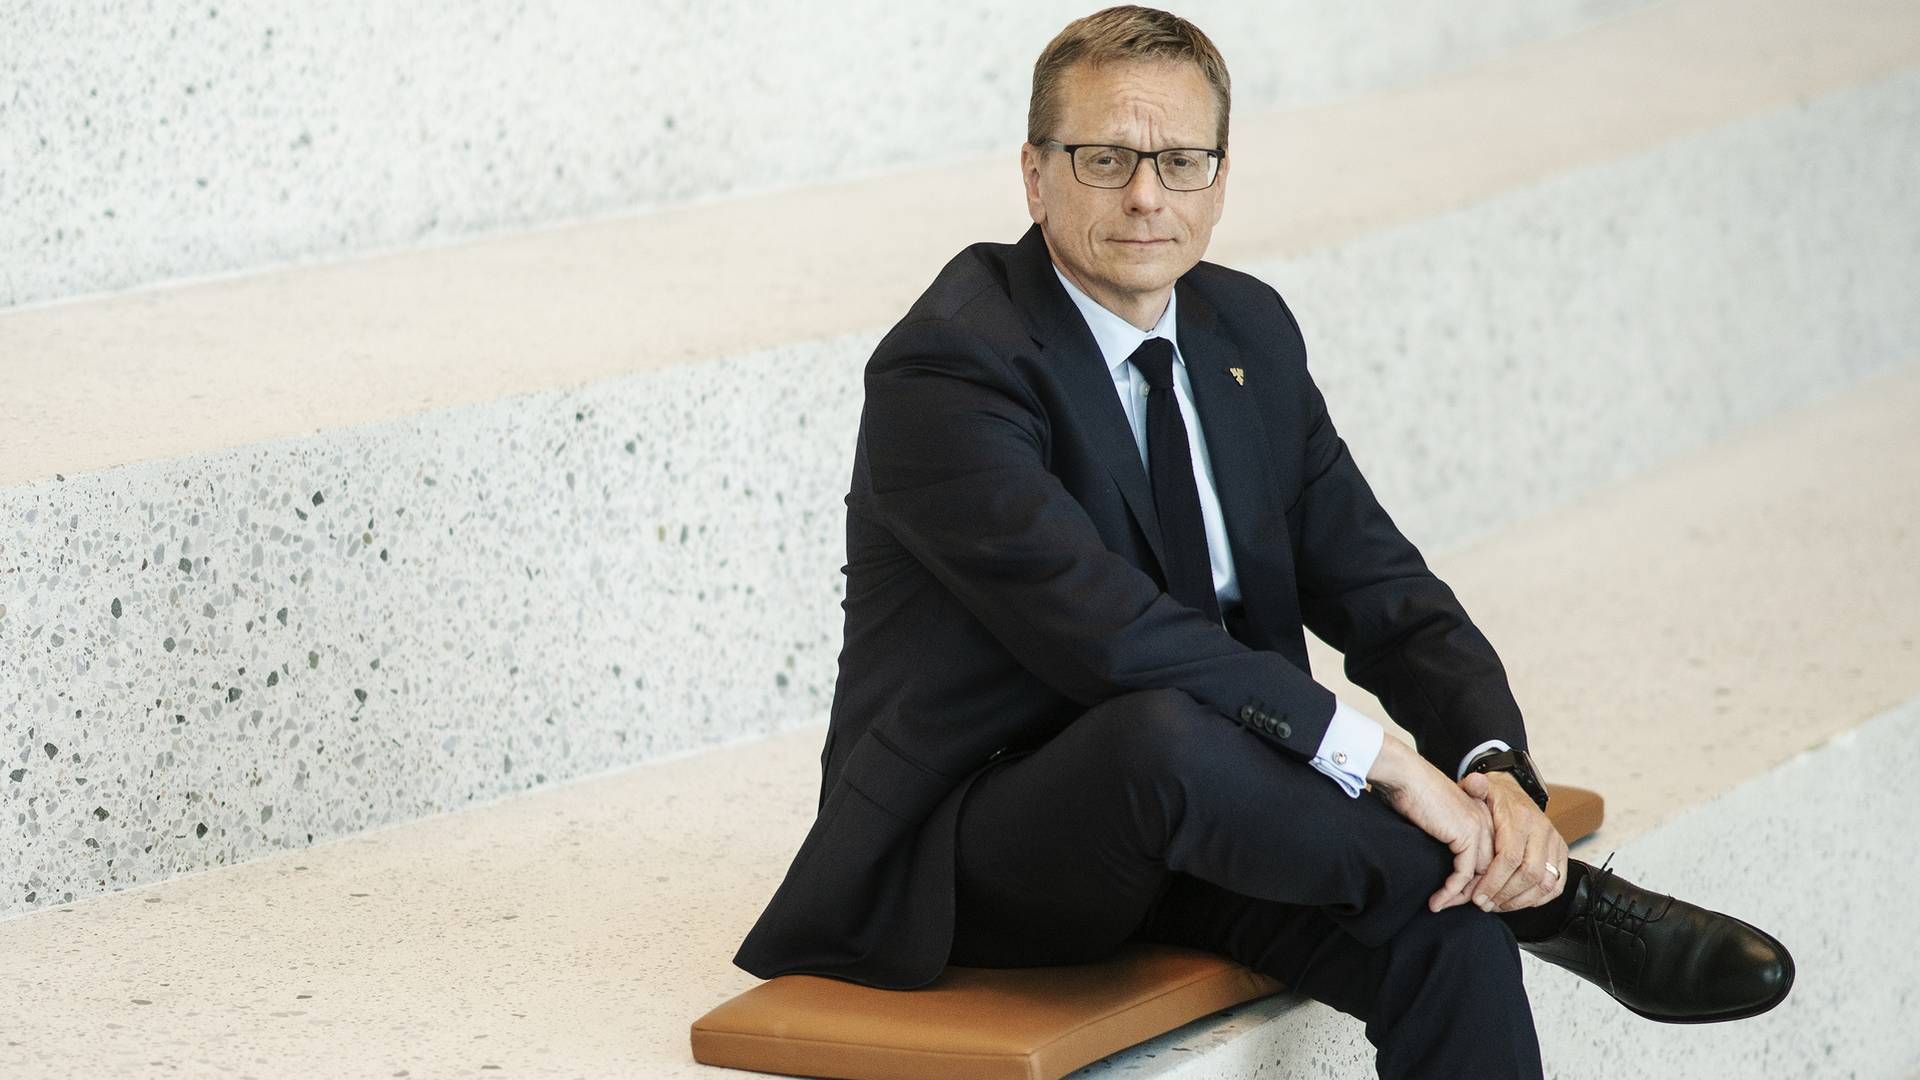 Finansdirektør Heine Dalsgaard har ligesom topchef Cees 't Hart solgt ud af sin aktiebeholdning i Carlsberg. | Foto: Stine Bidstrup/ERH